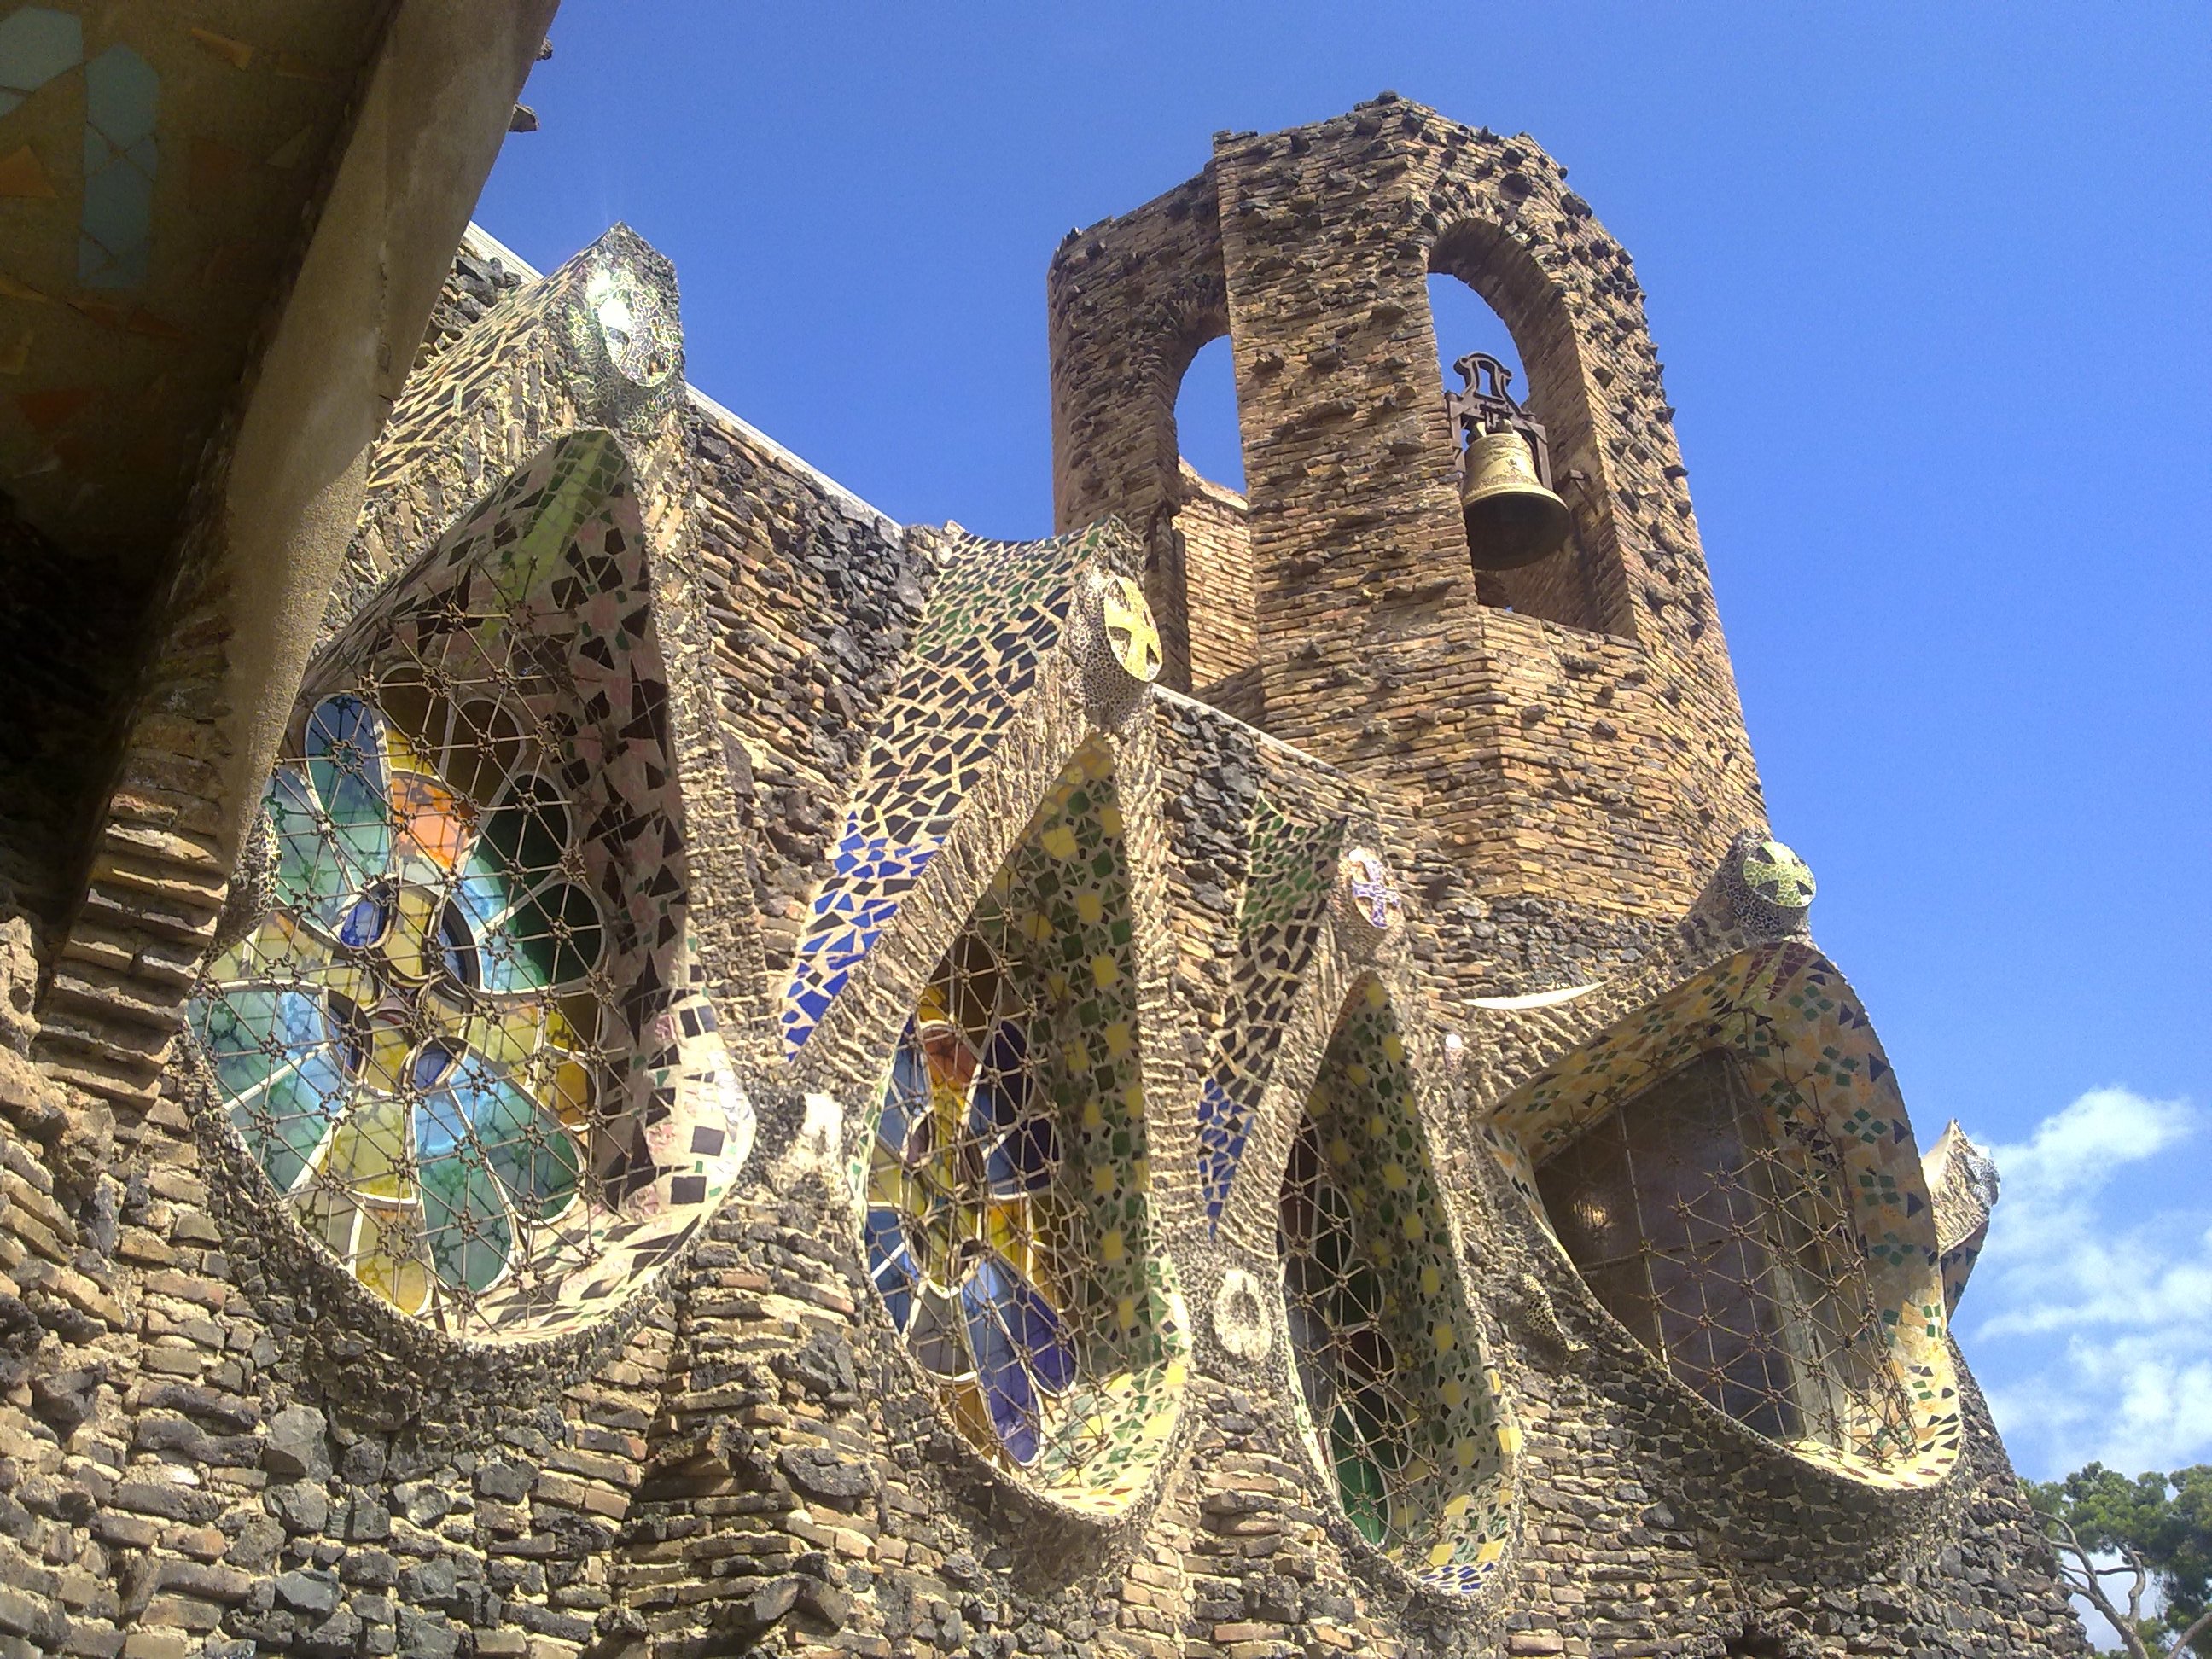 Barcelona, locul de joaca al fantasticului arhitect Antoni Gaudí